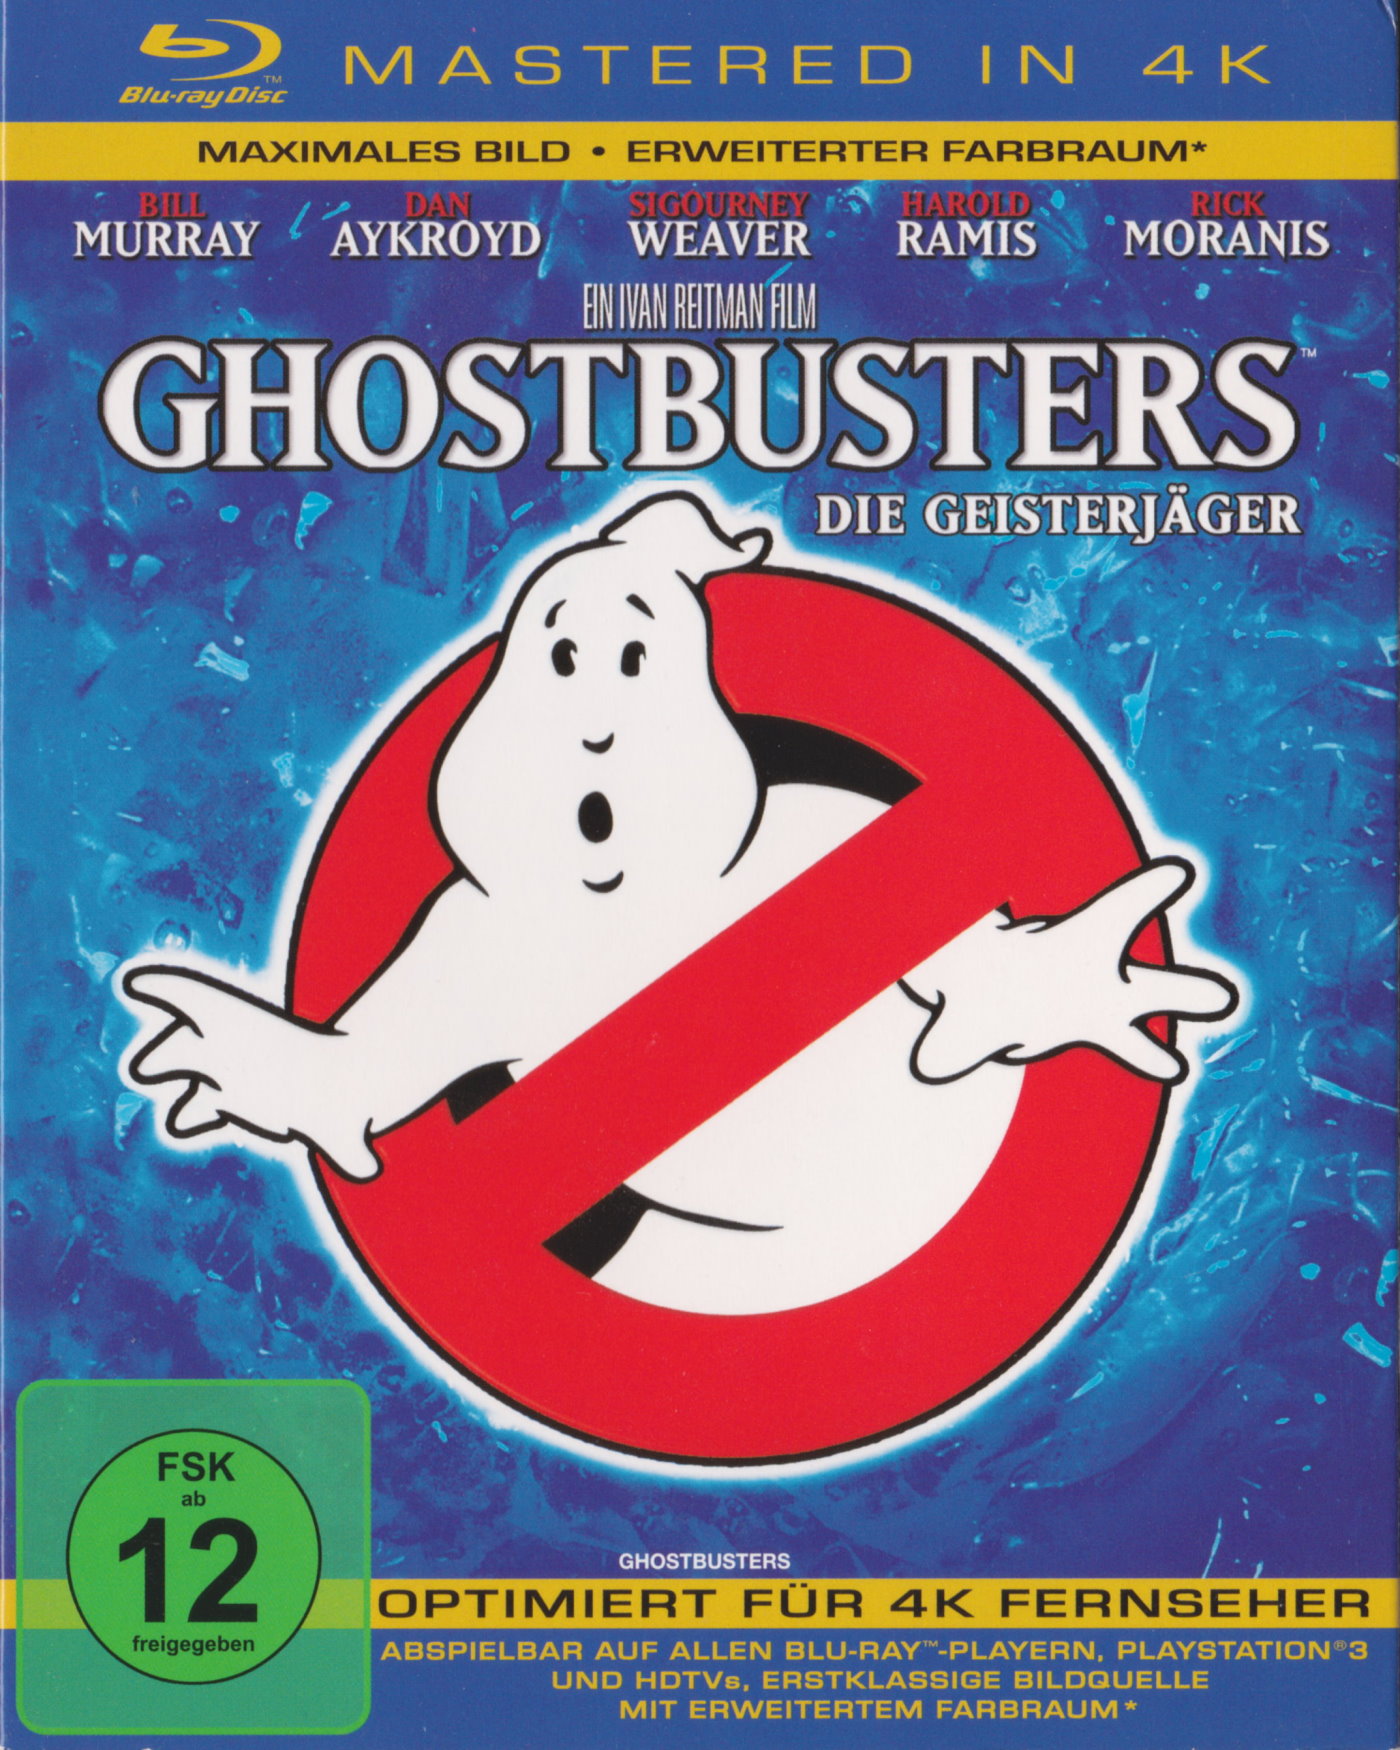 Cover - Ghostbusters - Die Geisterjäger.jpg